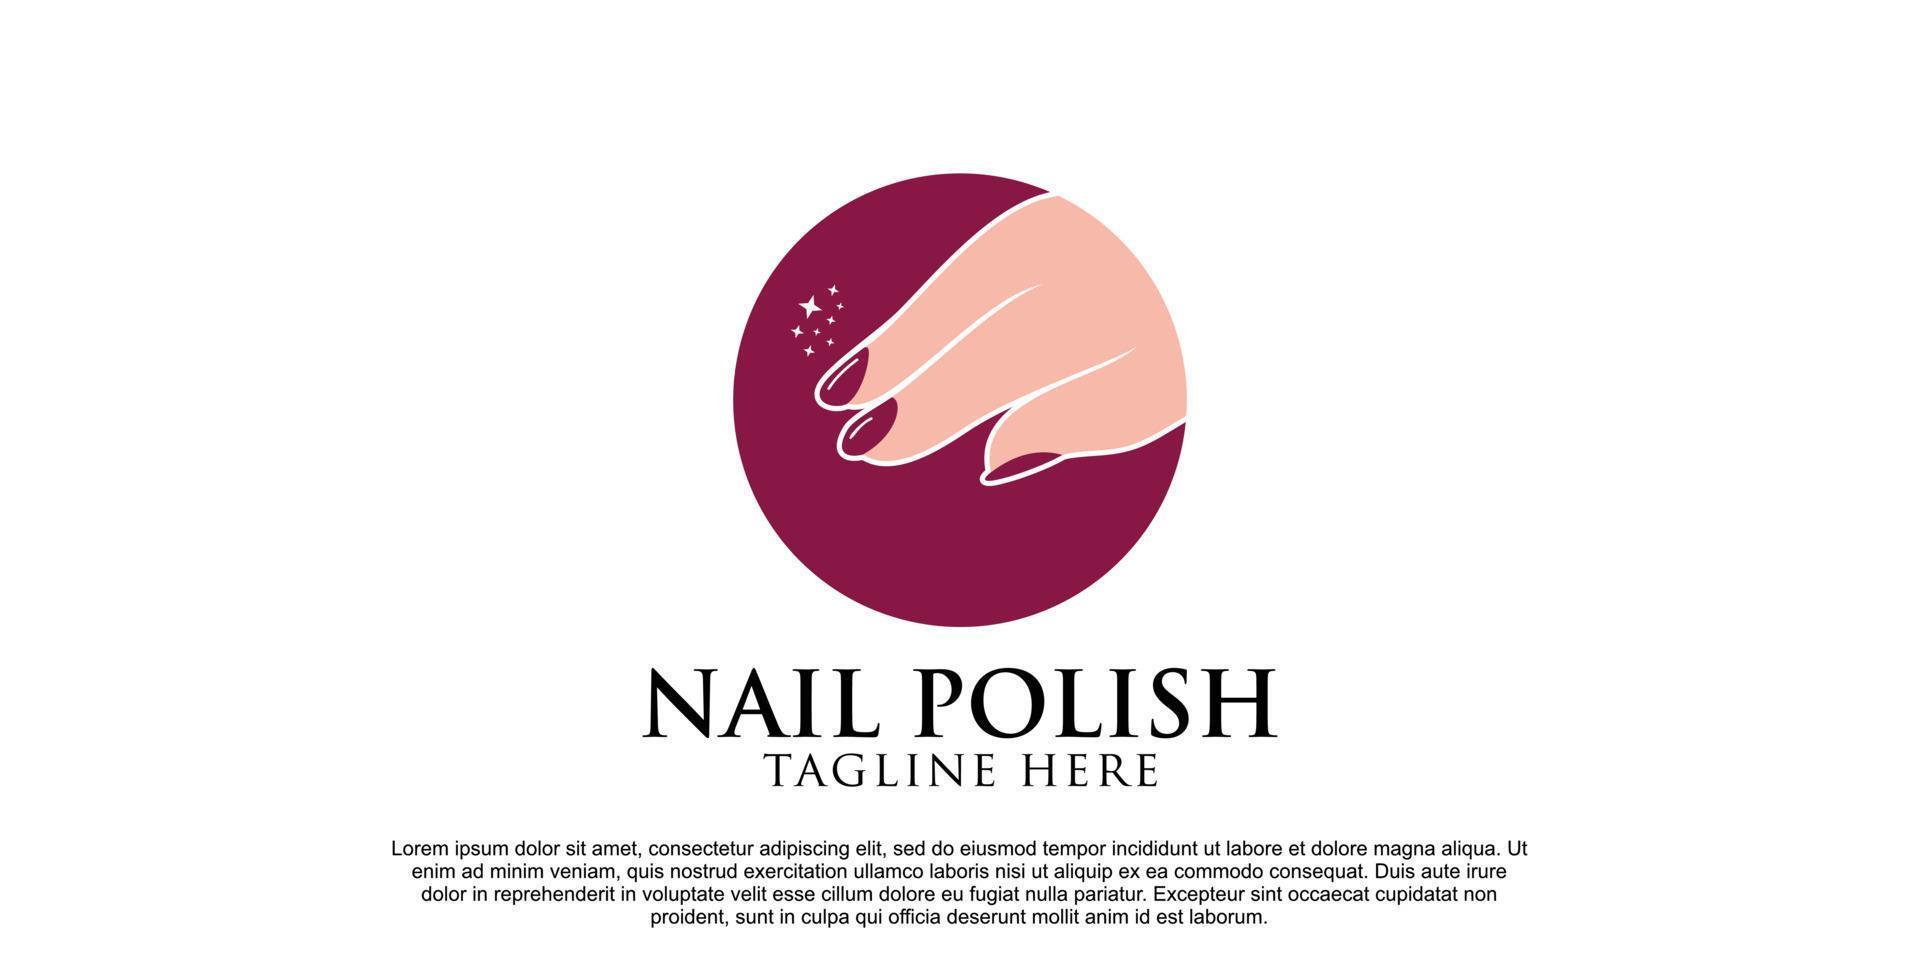 création de logo de vernis à ongles pour manucure et pédicure avec concept créatif vecteur premium partie 2